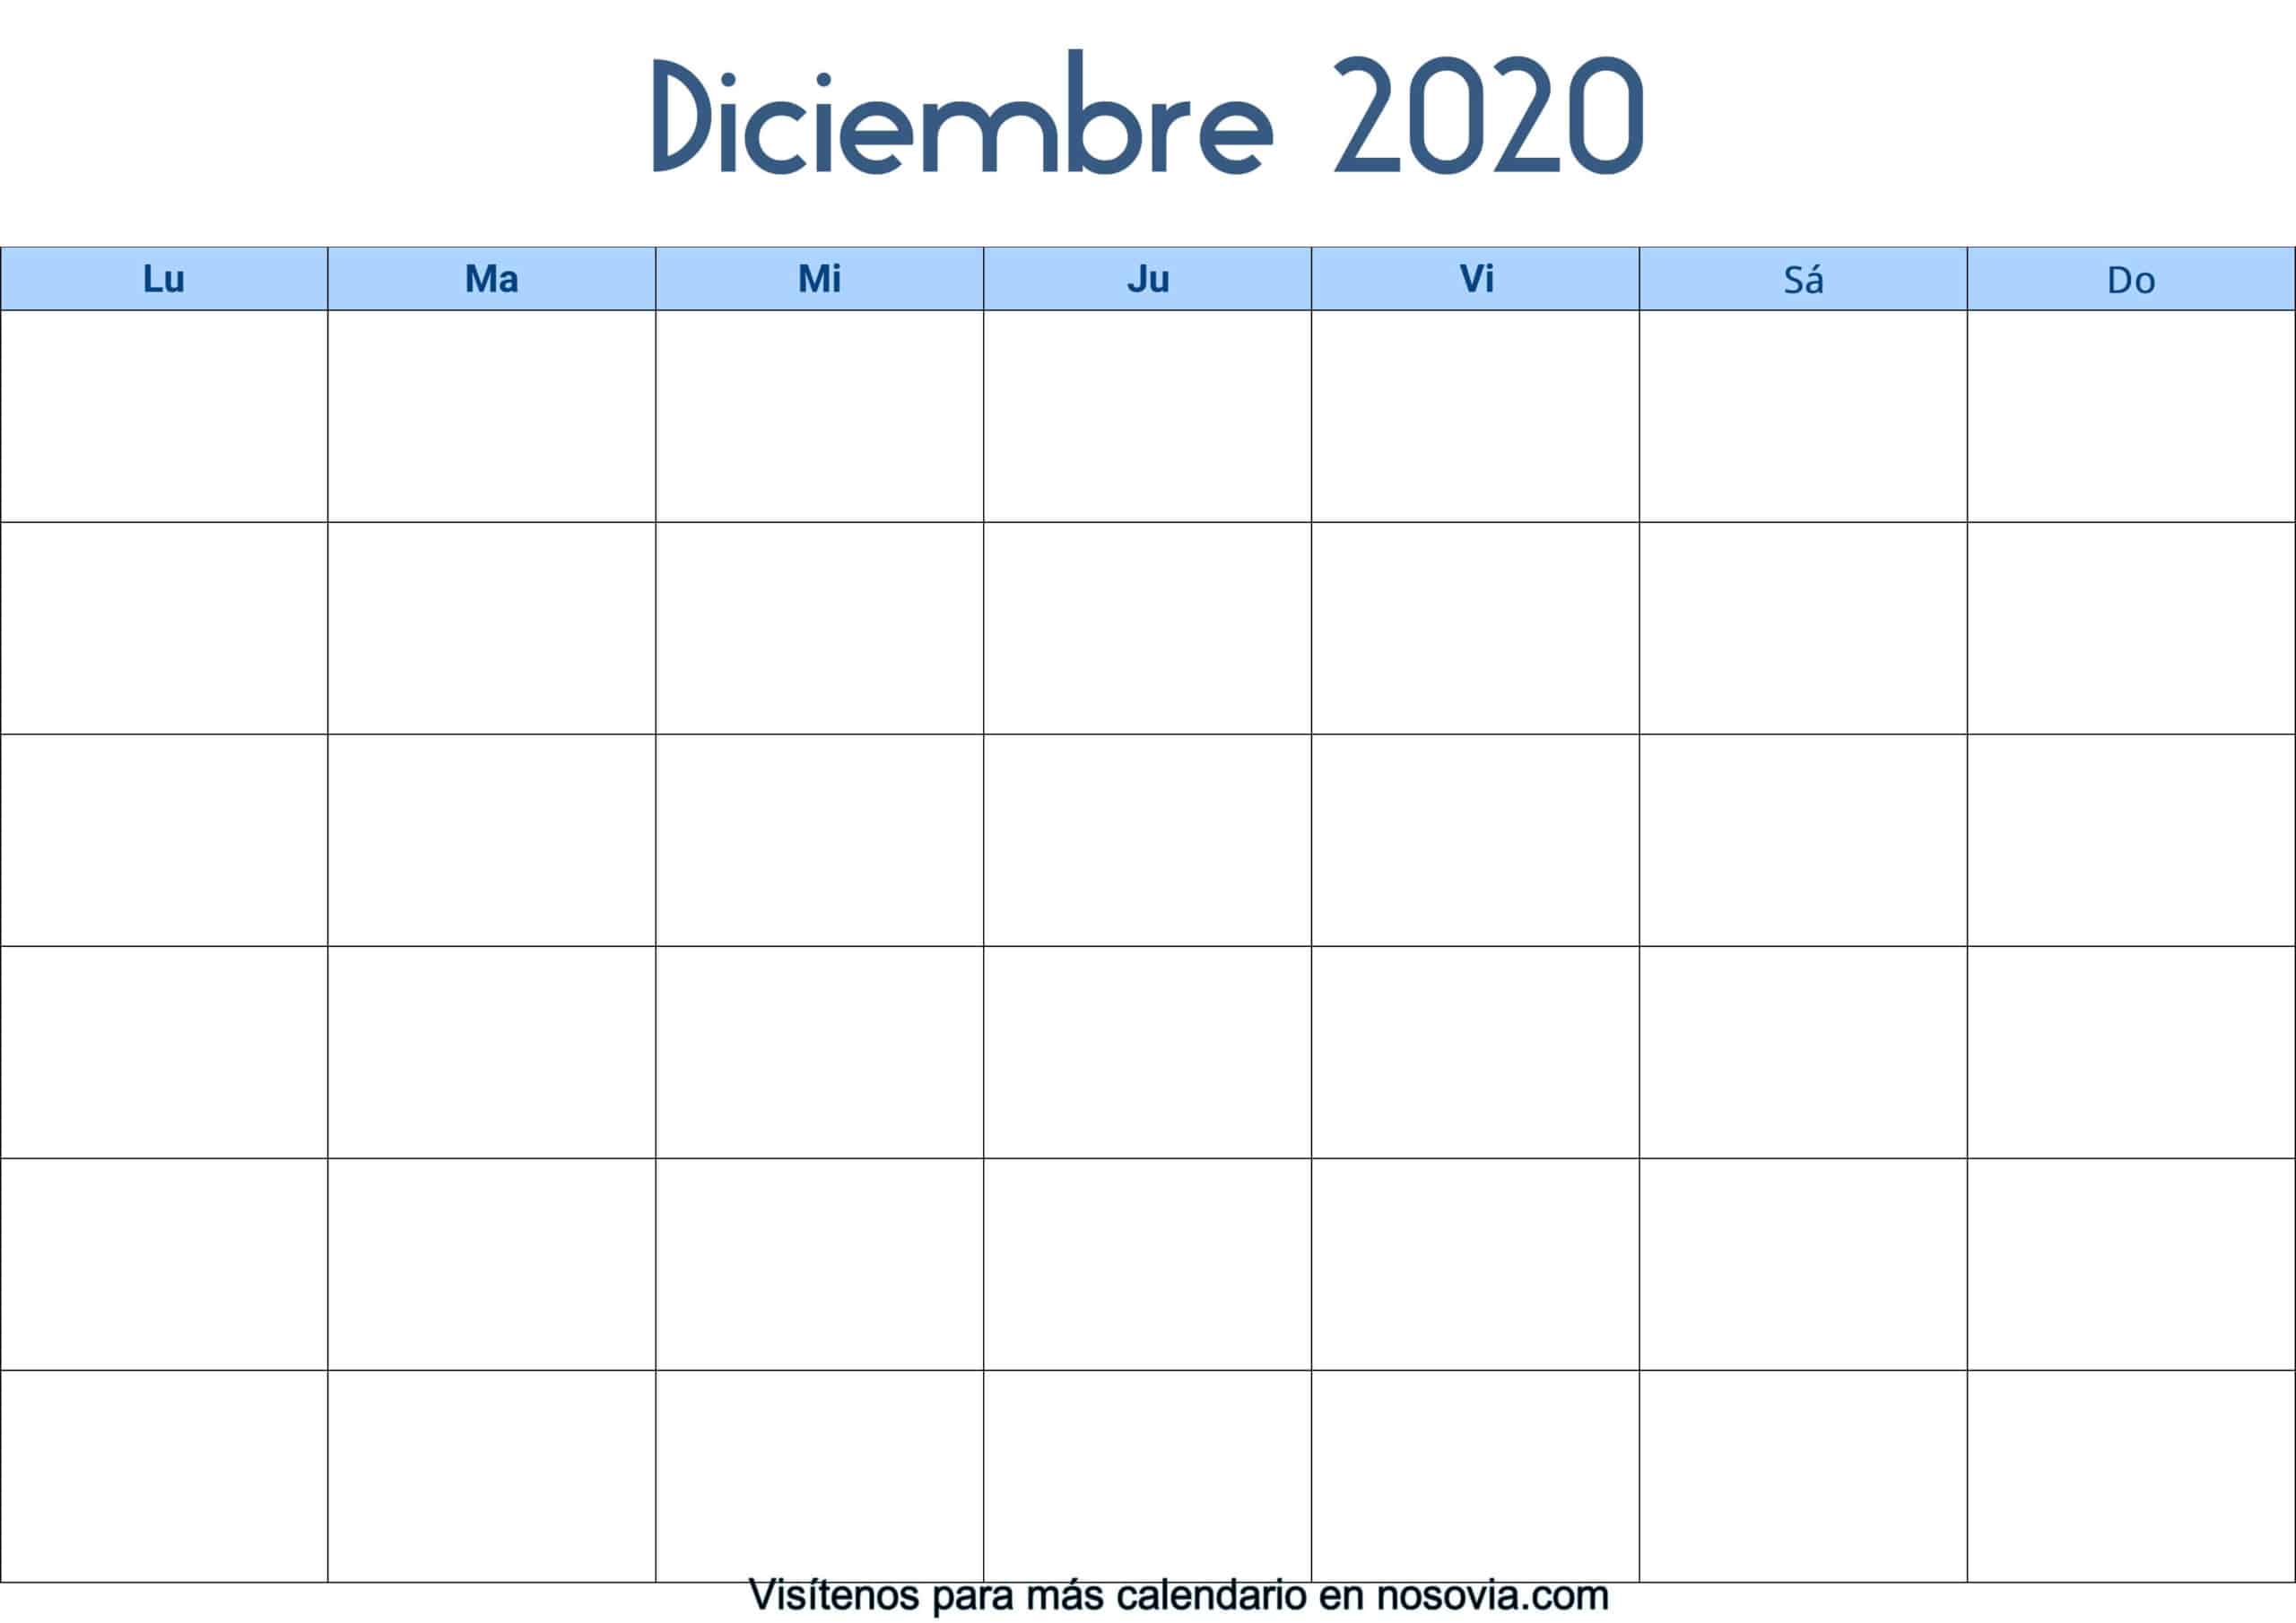 Calendario-diciembre-2020-en-blanco-Palabra-gratis